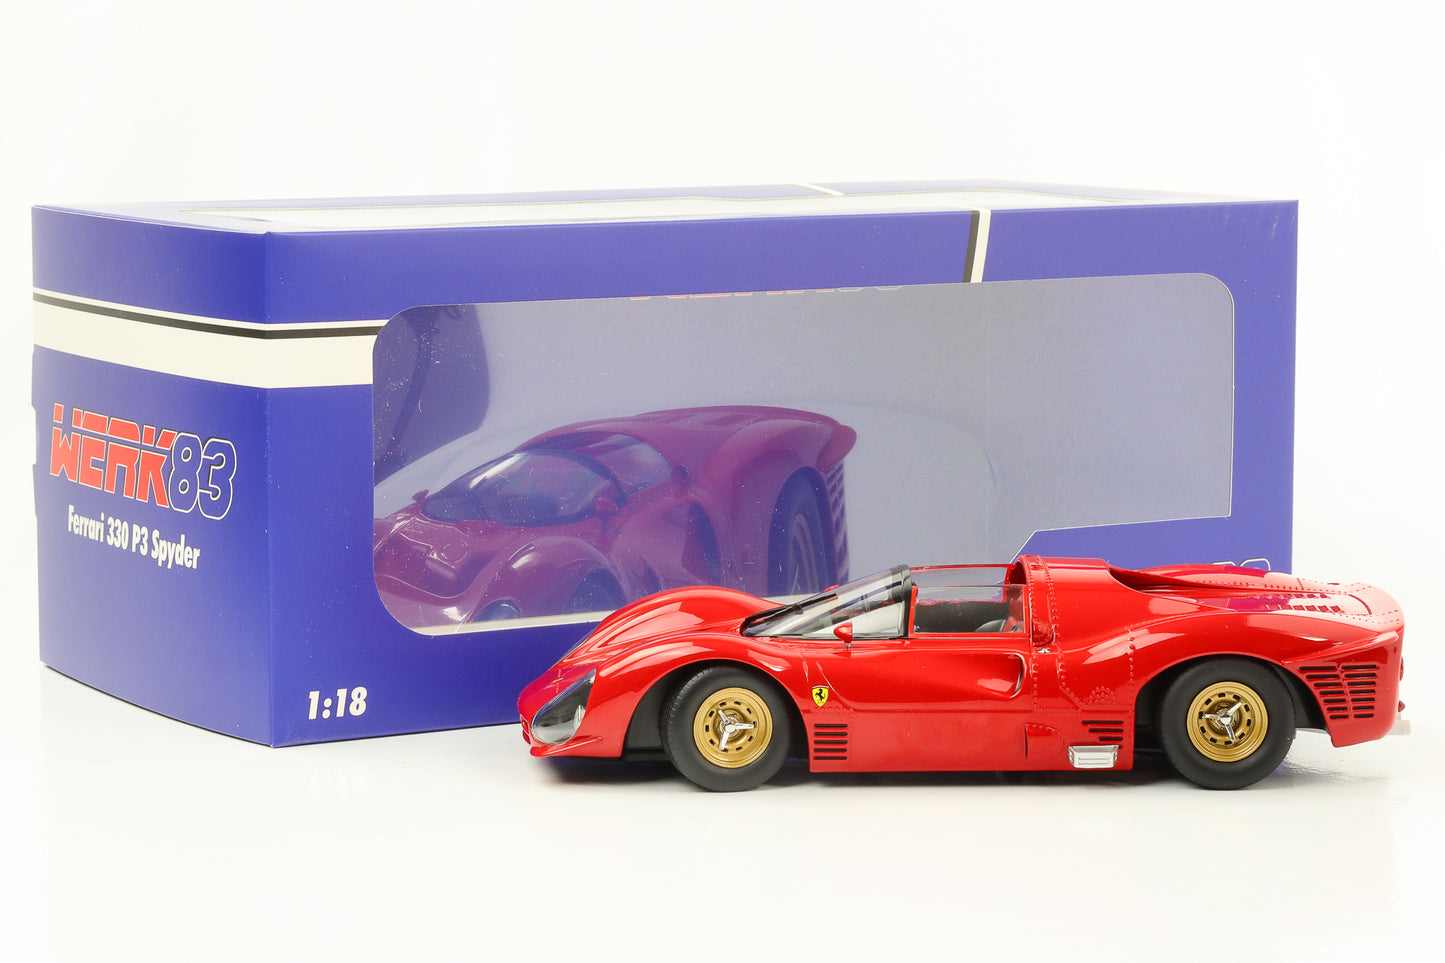 1:18 Ferrari 330 P3 Spider Plain Body Version red 1966 WERK83 diecast